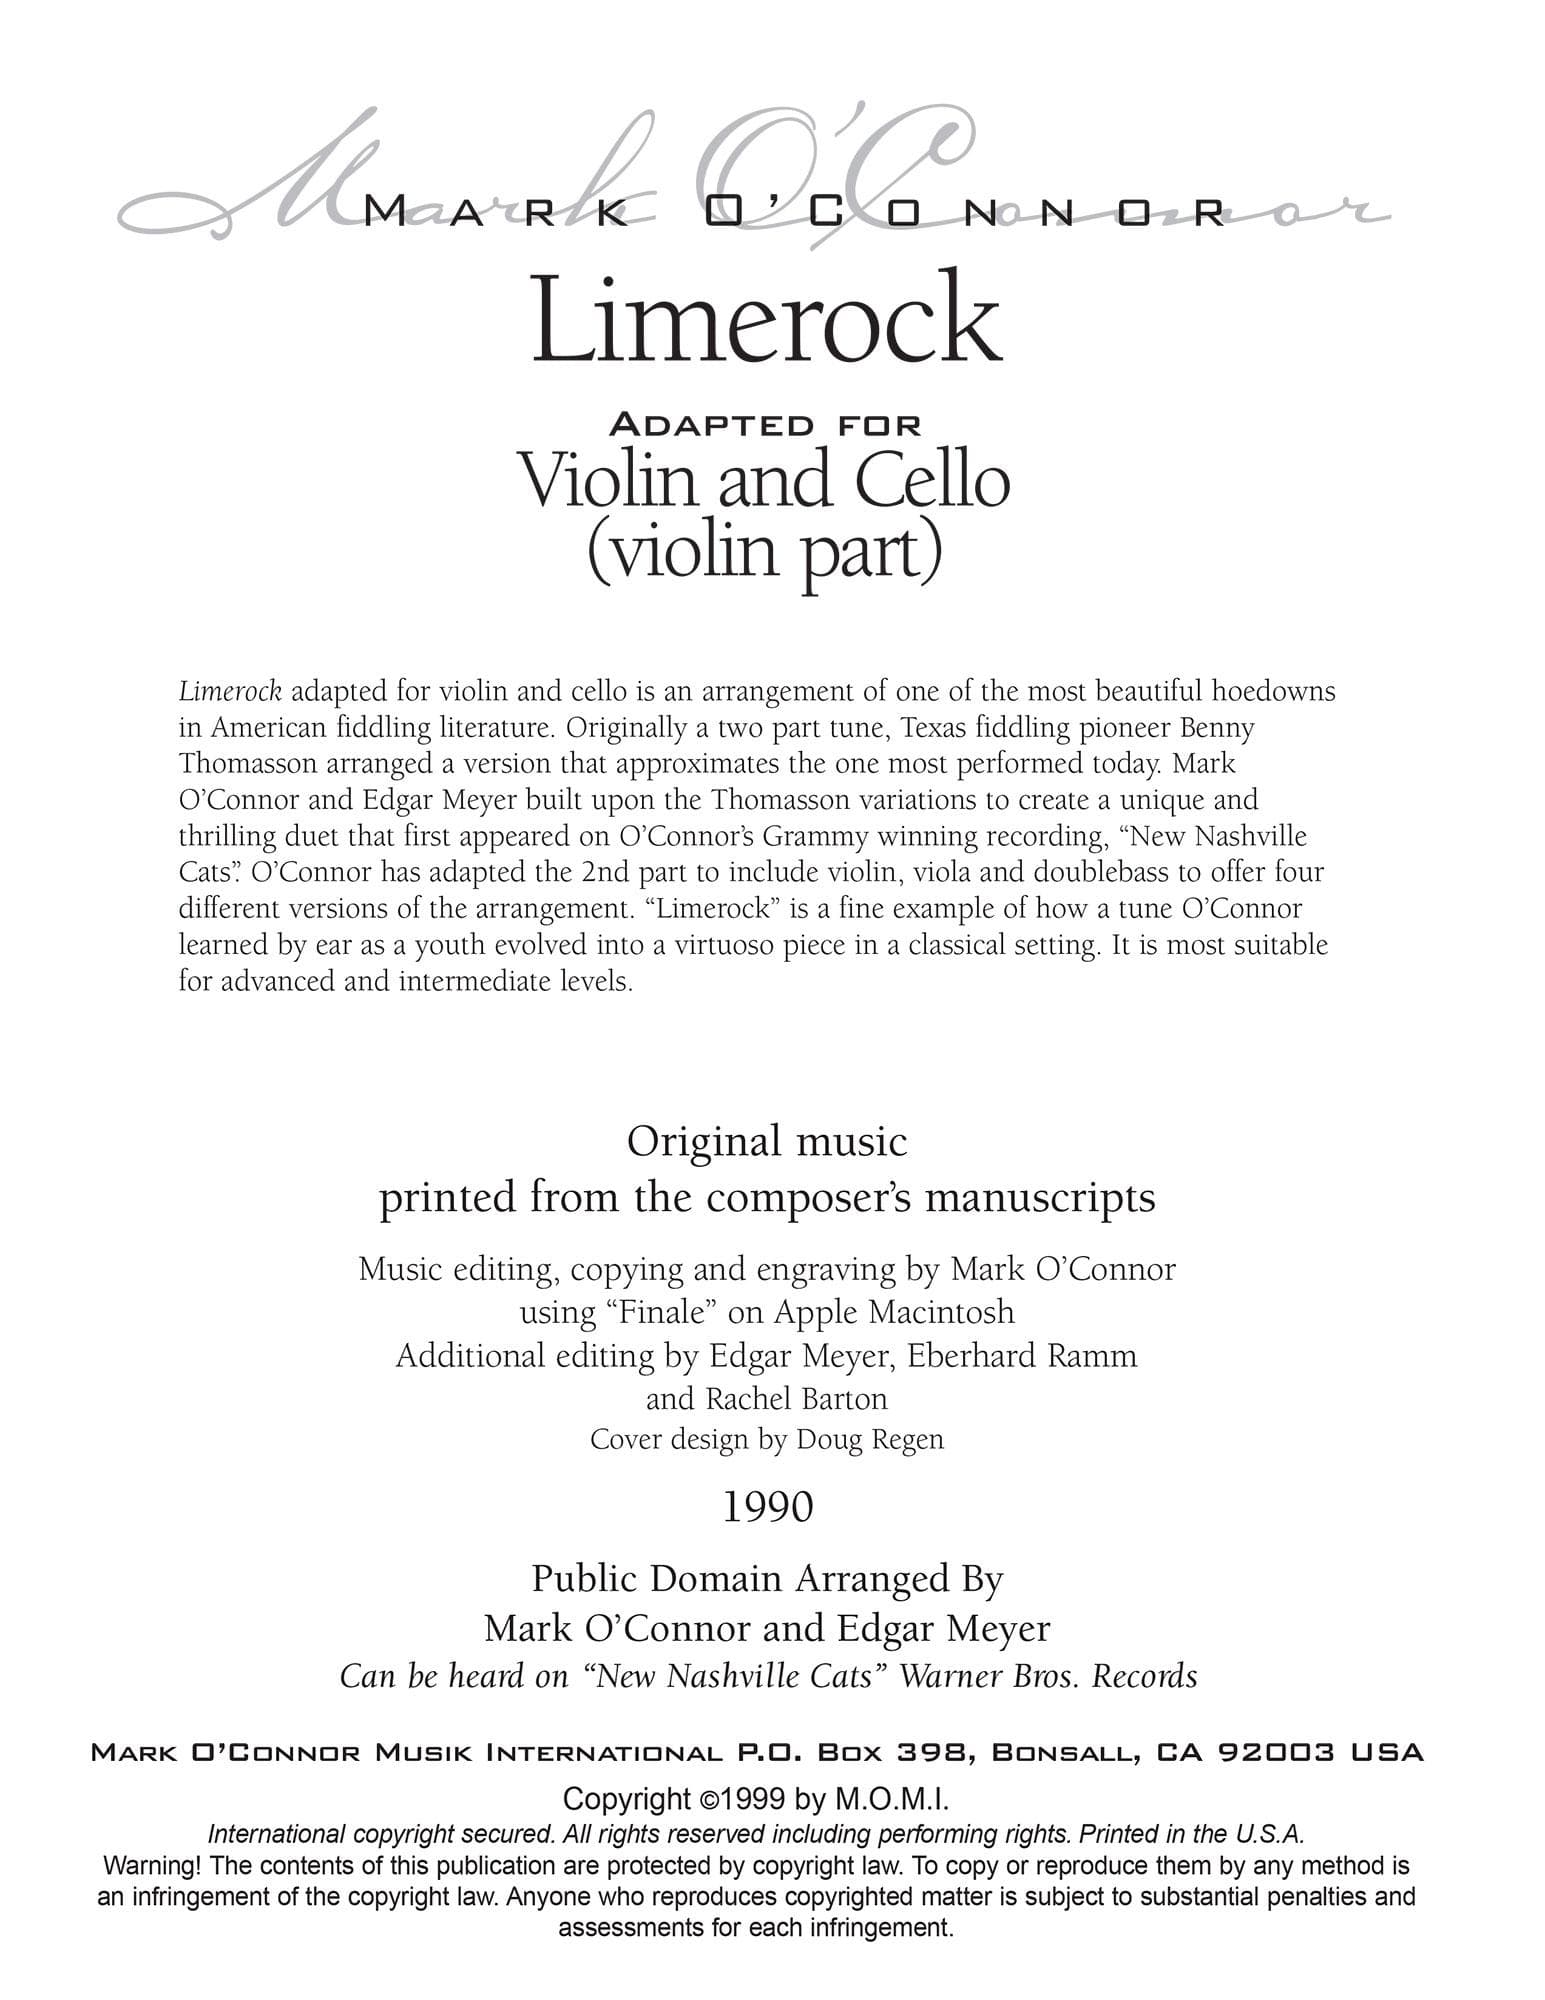 O'Connor, Mark - Limerock for Violin and Cello - Violin - Digital Download